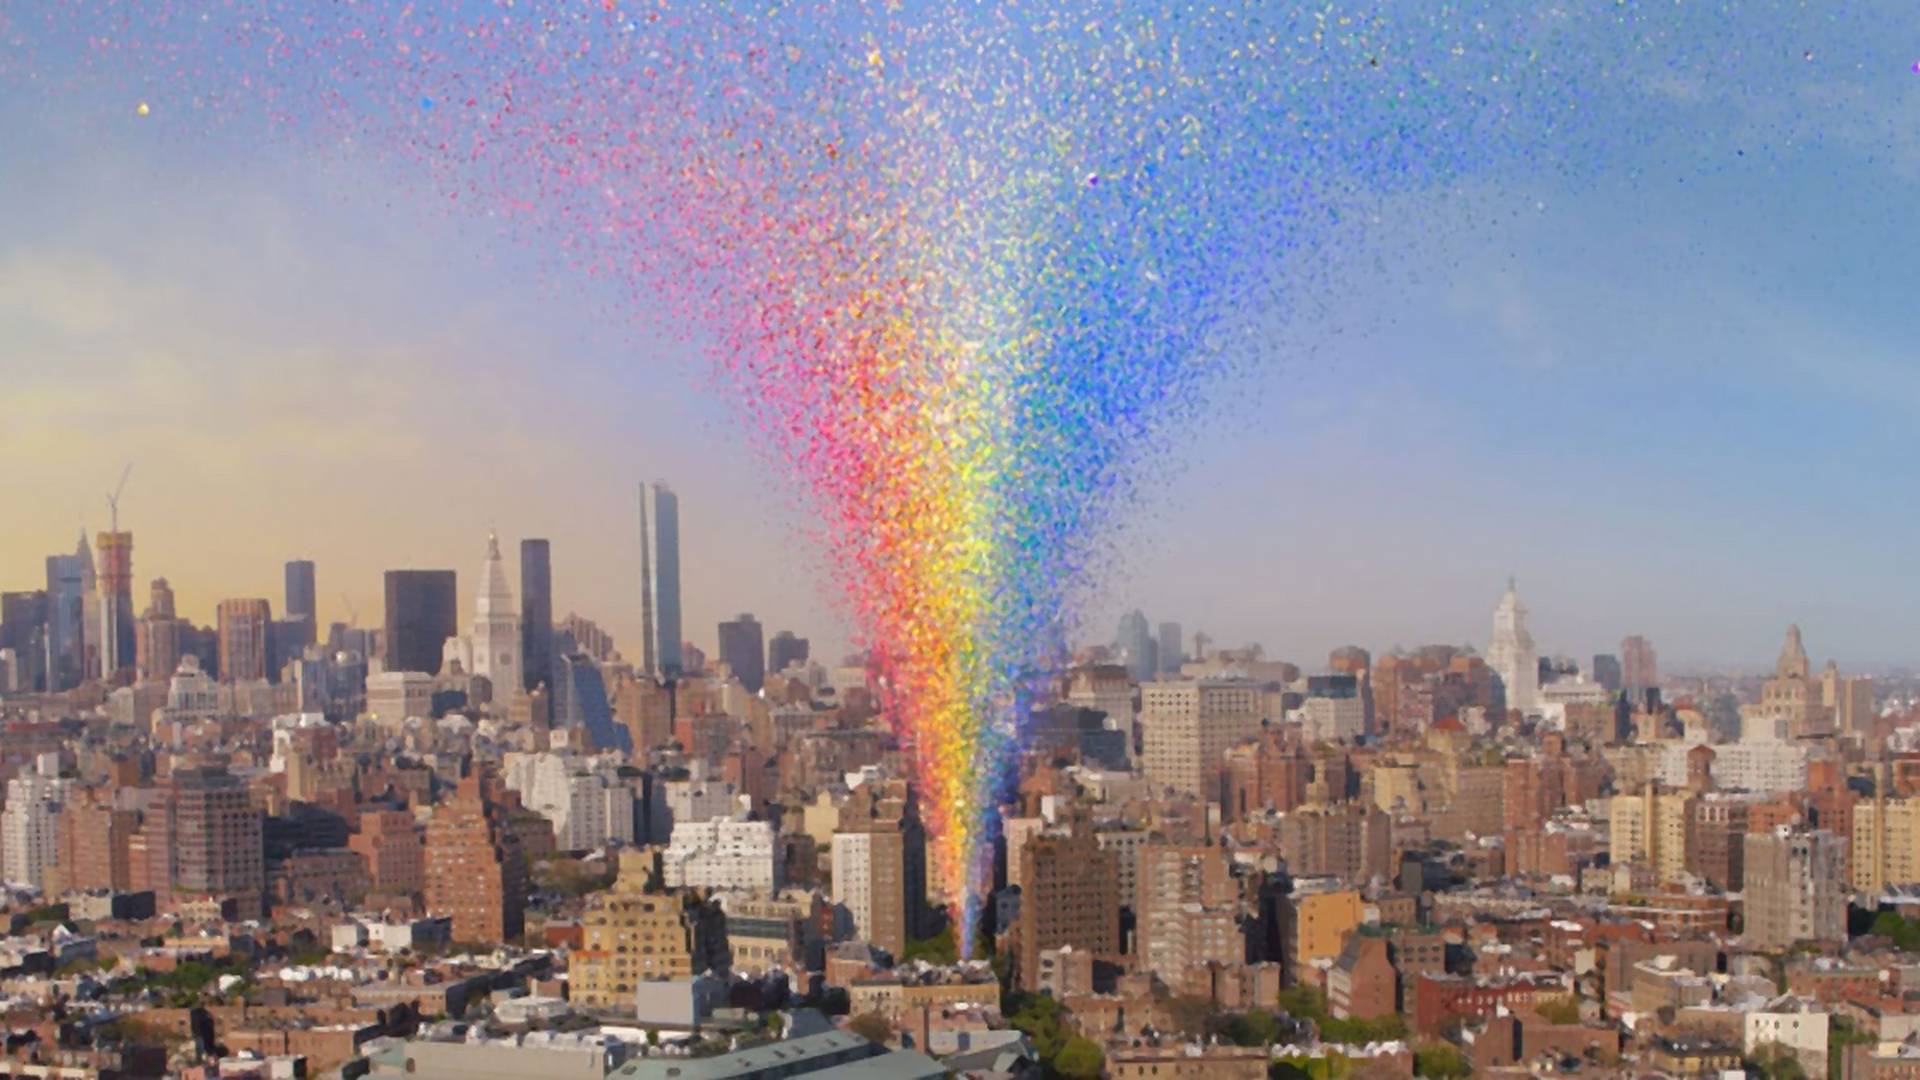 Google stworzyło żyjący pomnik na rzecz LGBTQ+. Wirtualny monument w centrum Nowego Jorka